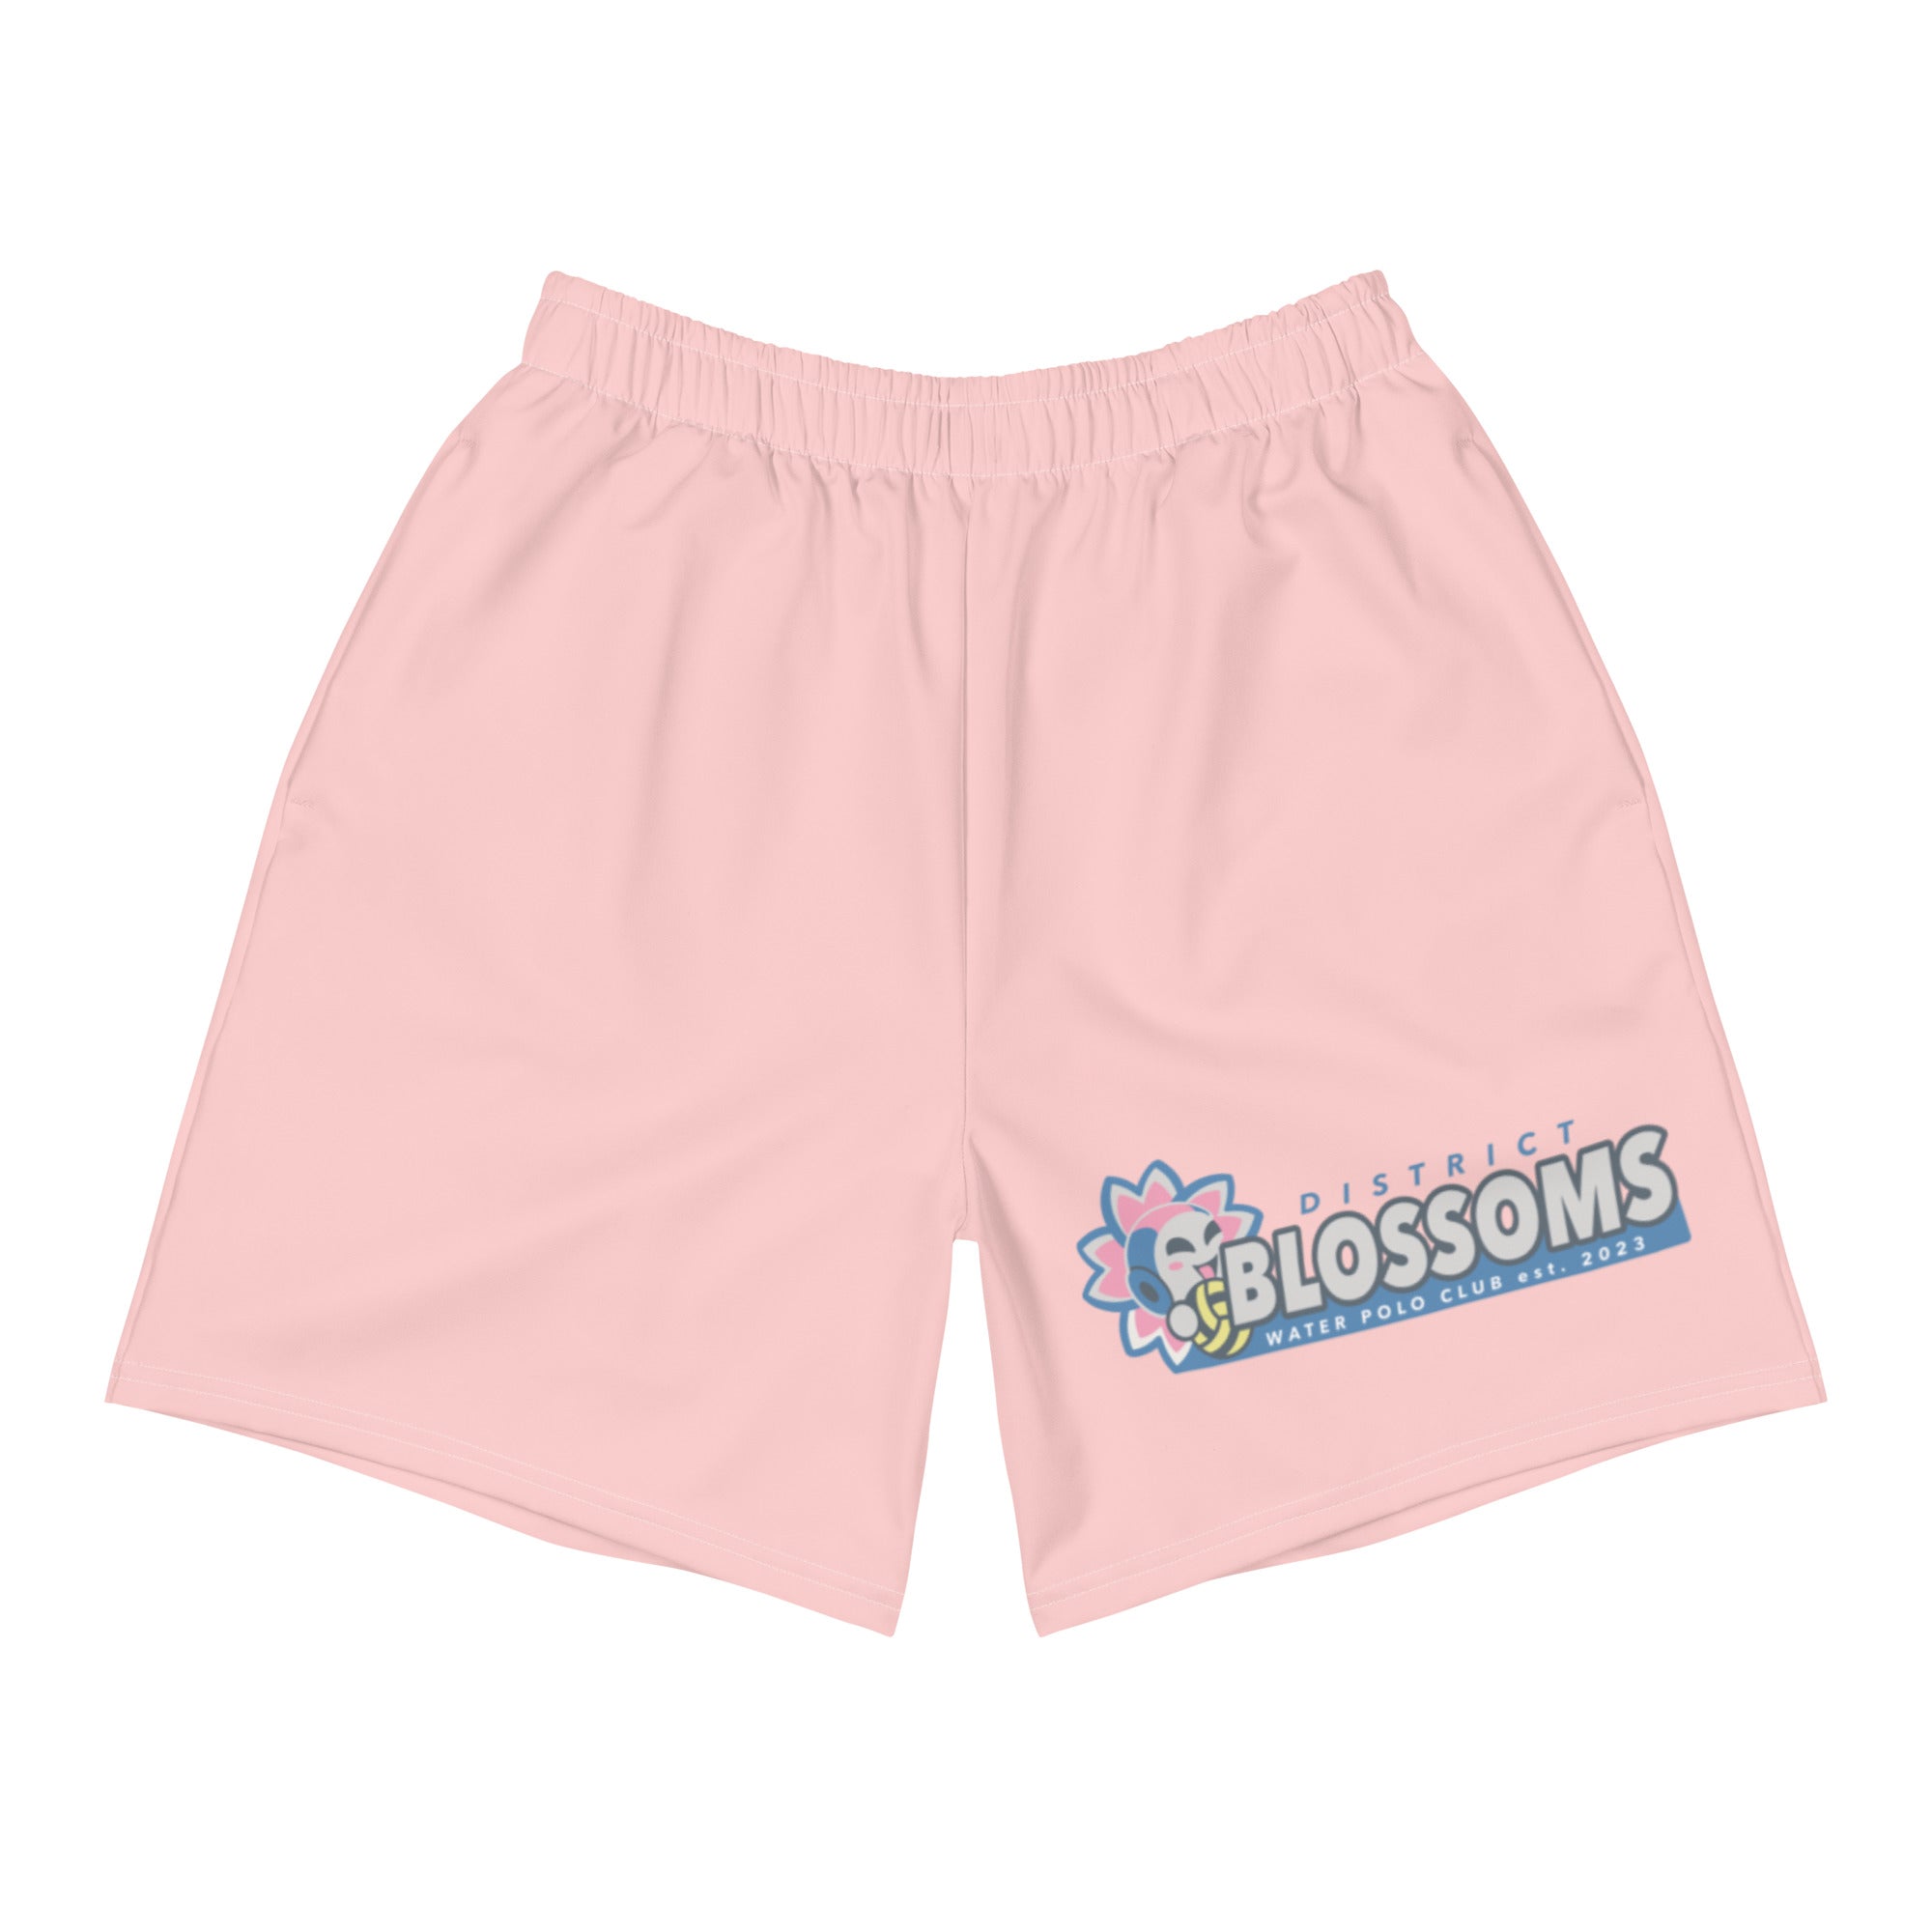 District Blossoms WPC_  Men's Athletic Shorts